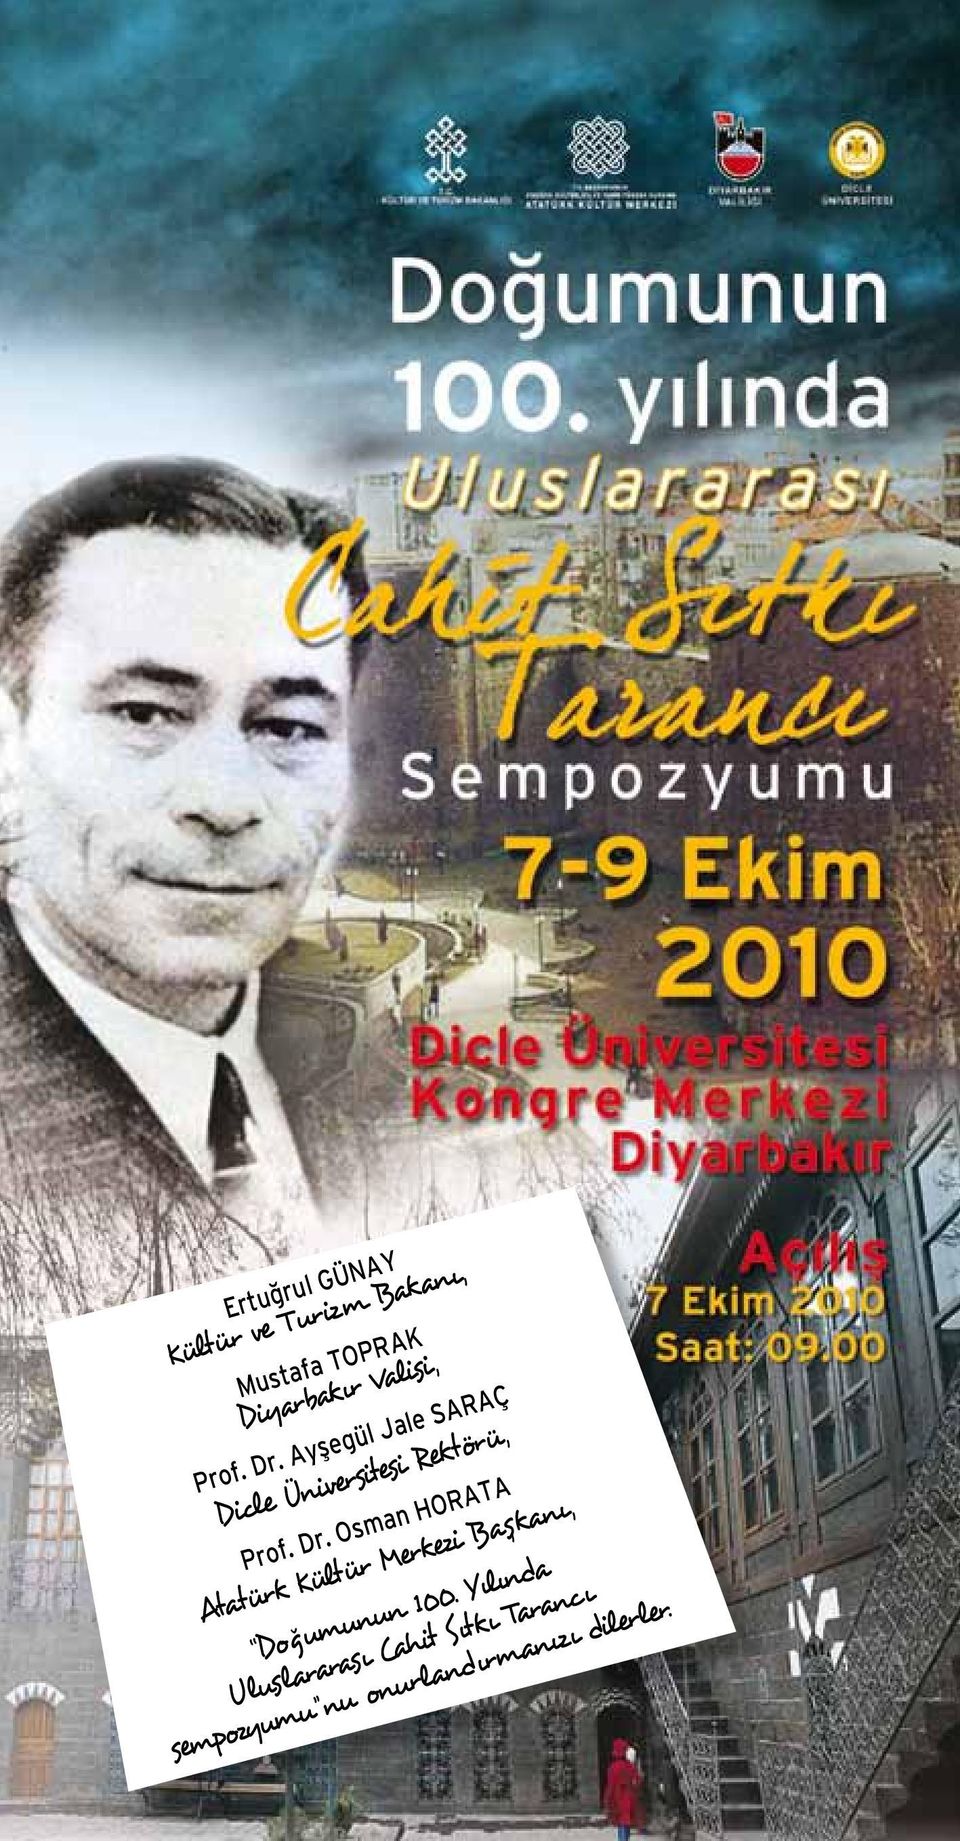 Dr. Osman HORATA Atatürk Kültür Merkezi Başkanı, Doğumunun 100.